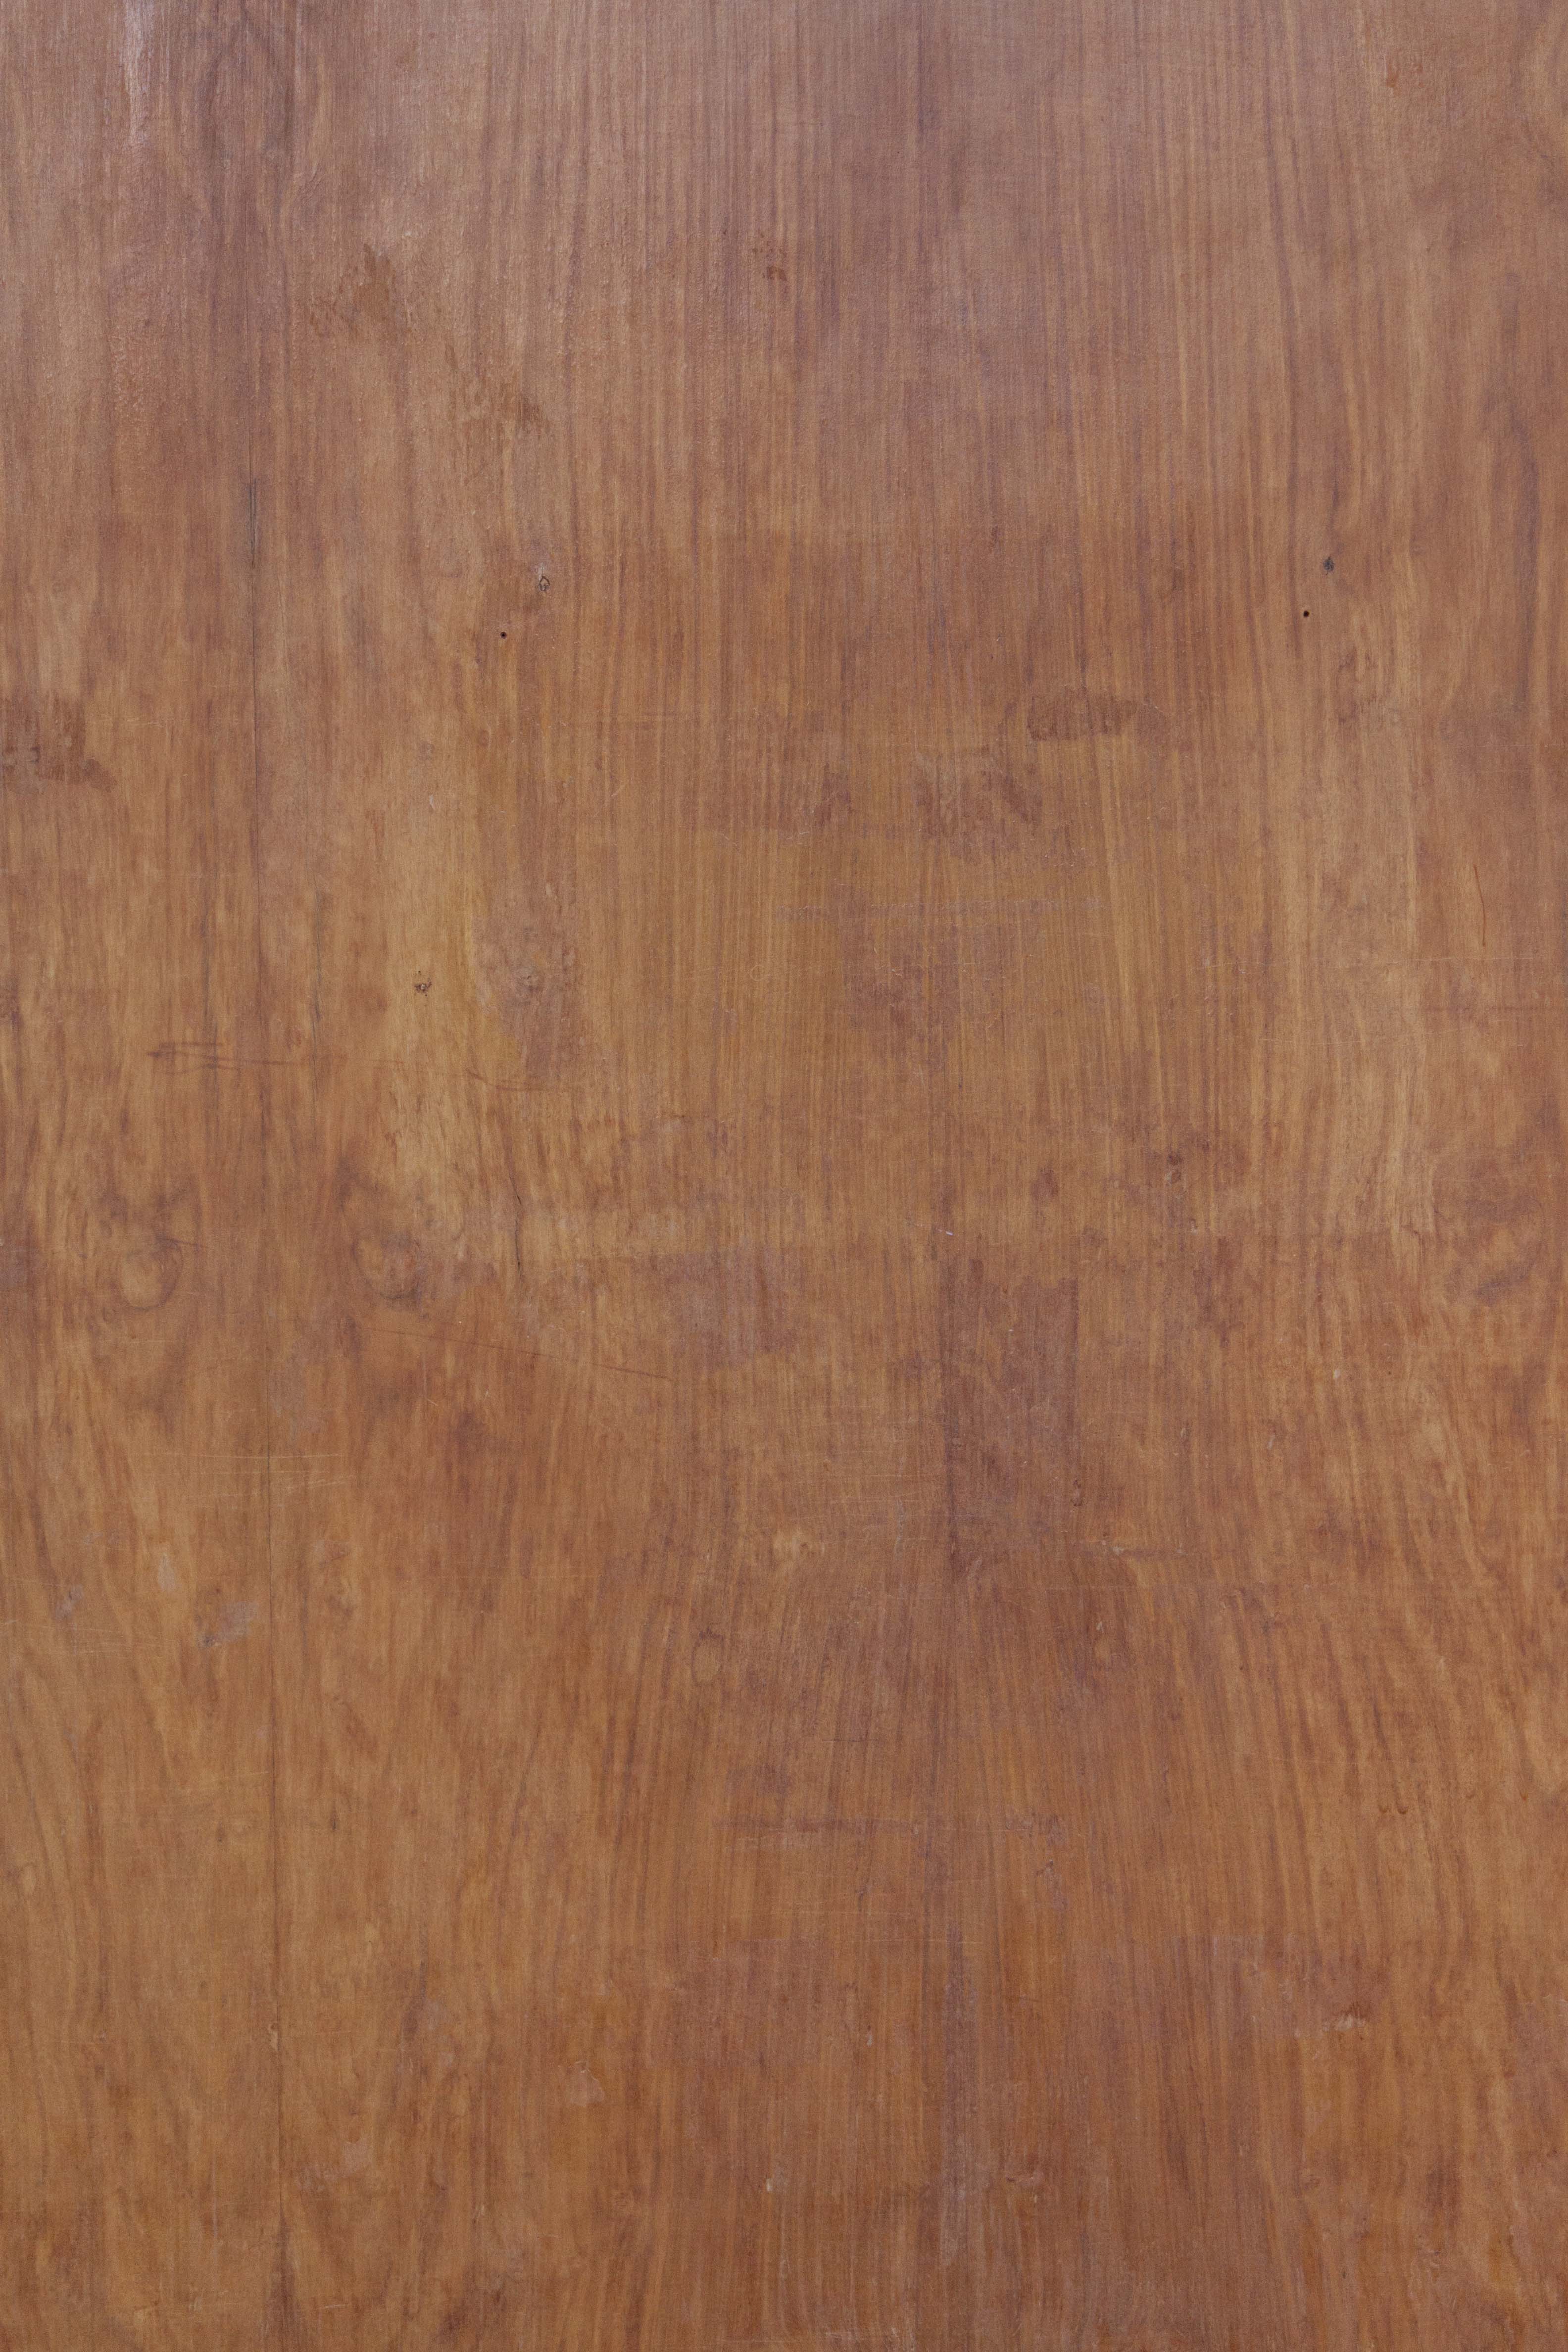 Wooden door texture photo